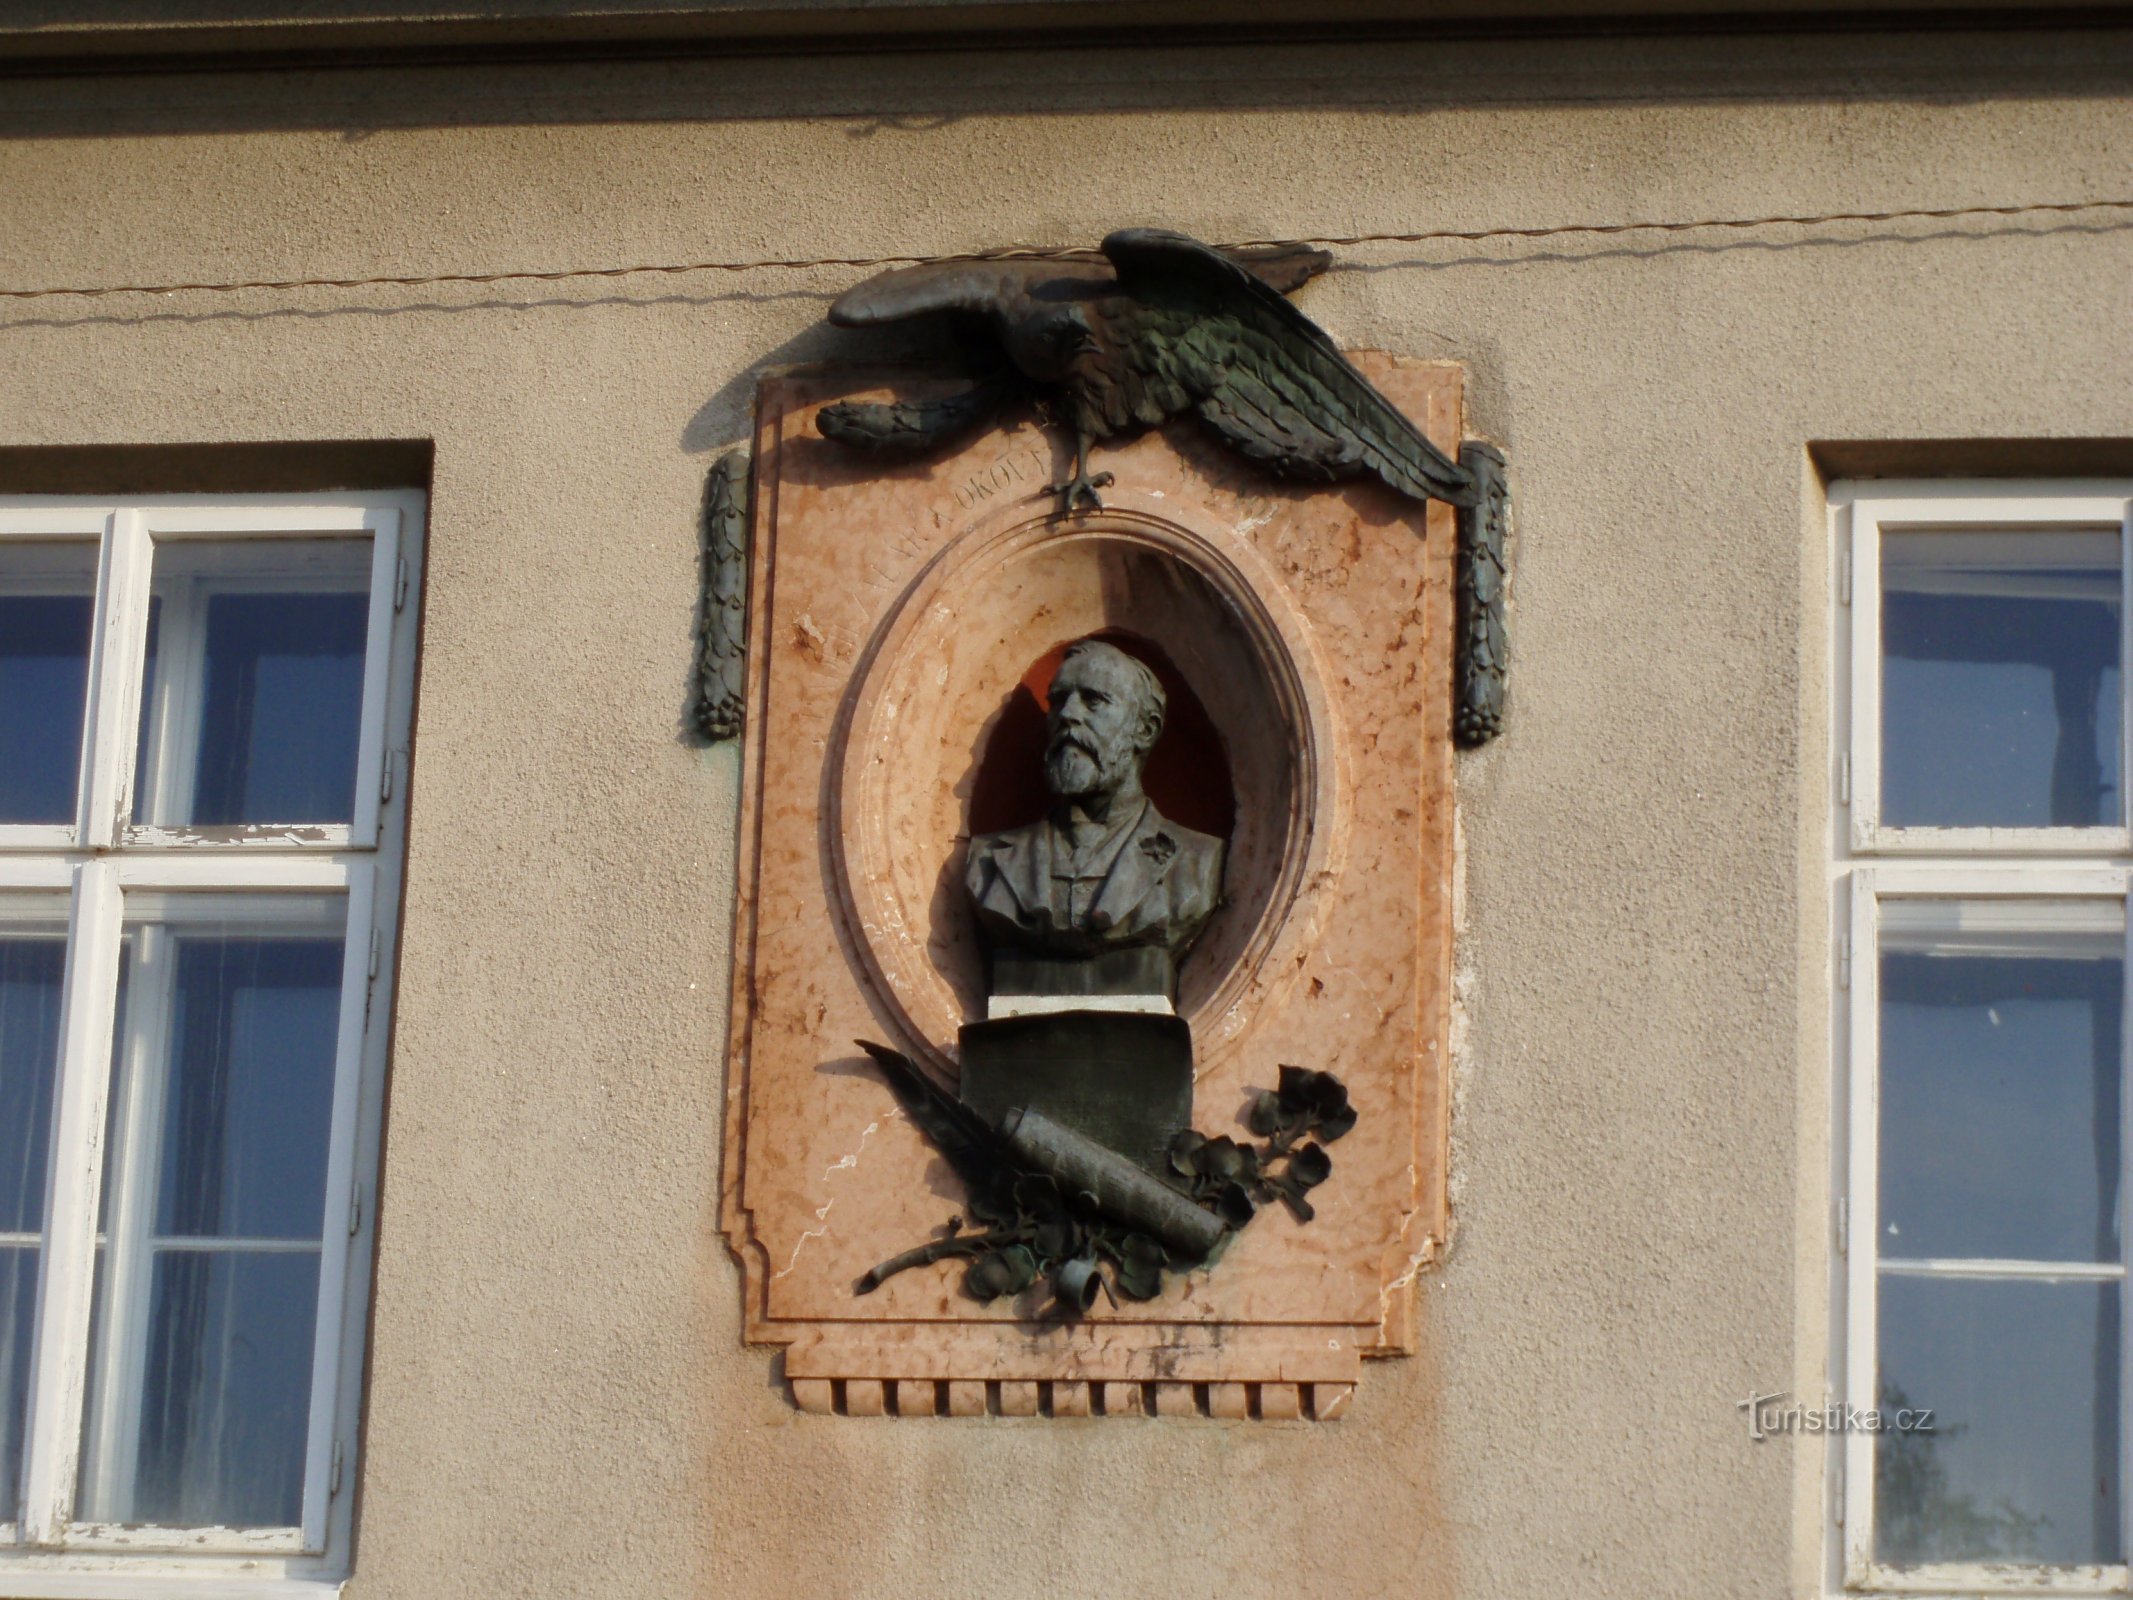 Tablica pamiątkowa z popiersiem JUDr. Julia Grégra przed zniknięciem popiersia (Hradec Králové)